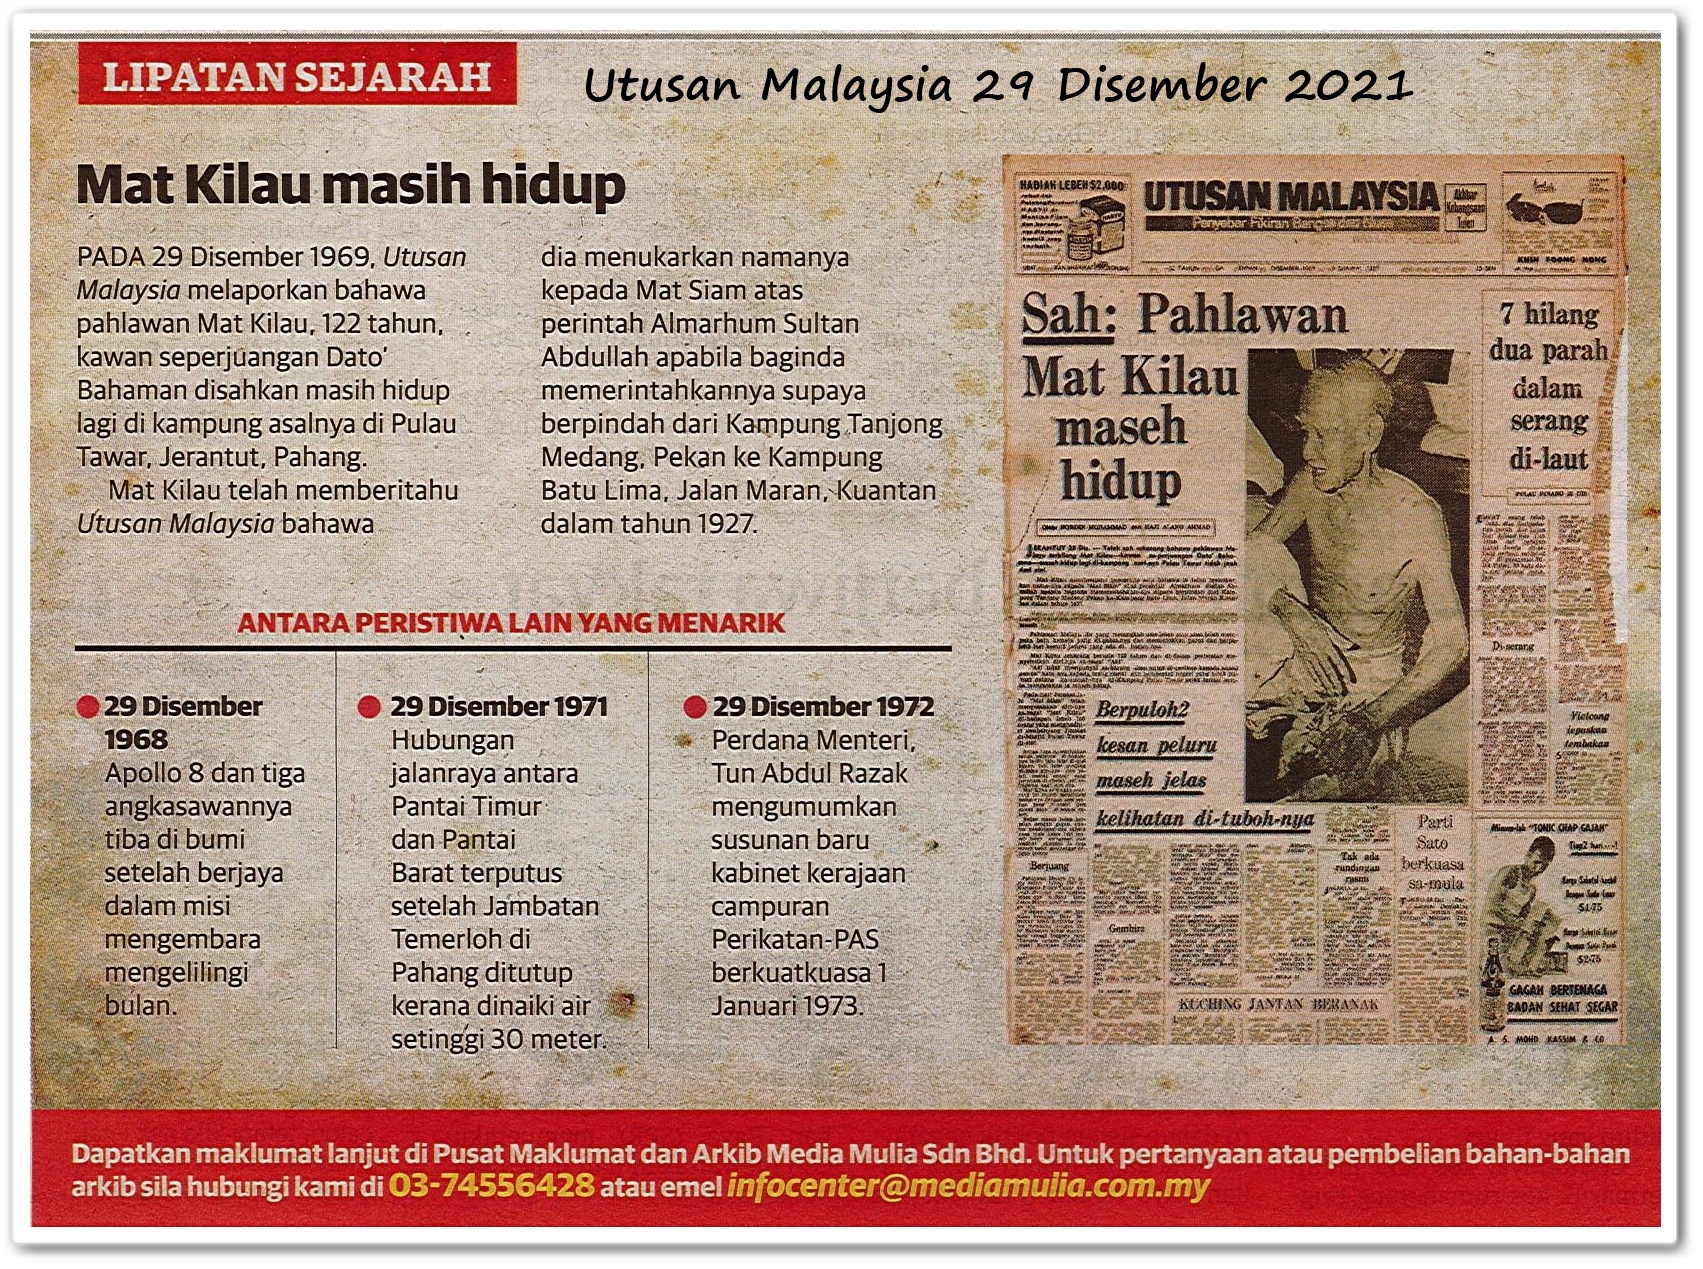 Lipatan sejarah 29 Disember - Keratan akhbar Utusan Malaysia 29 Disember 2021